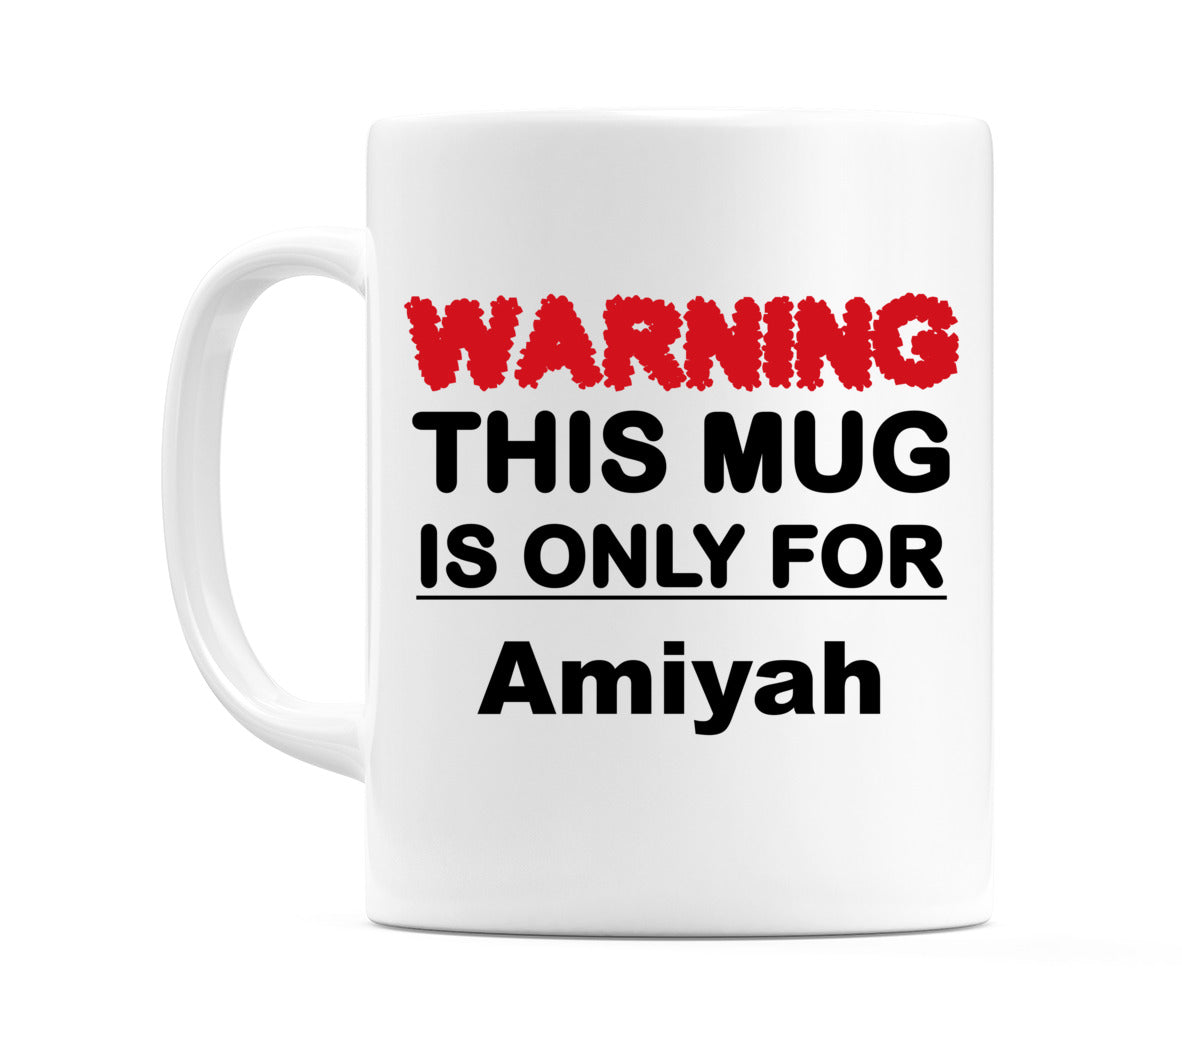 Warning This Mug is ONLY for Amiyah Mug